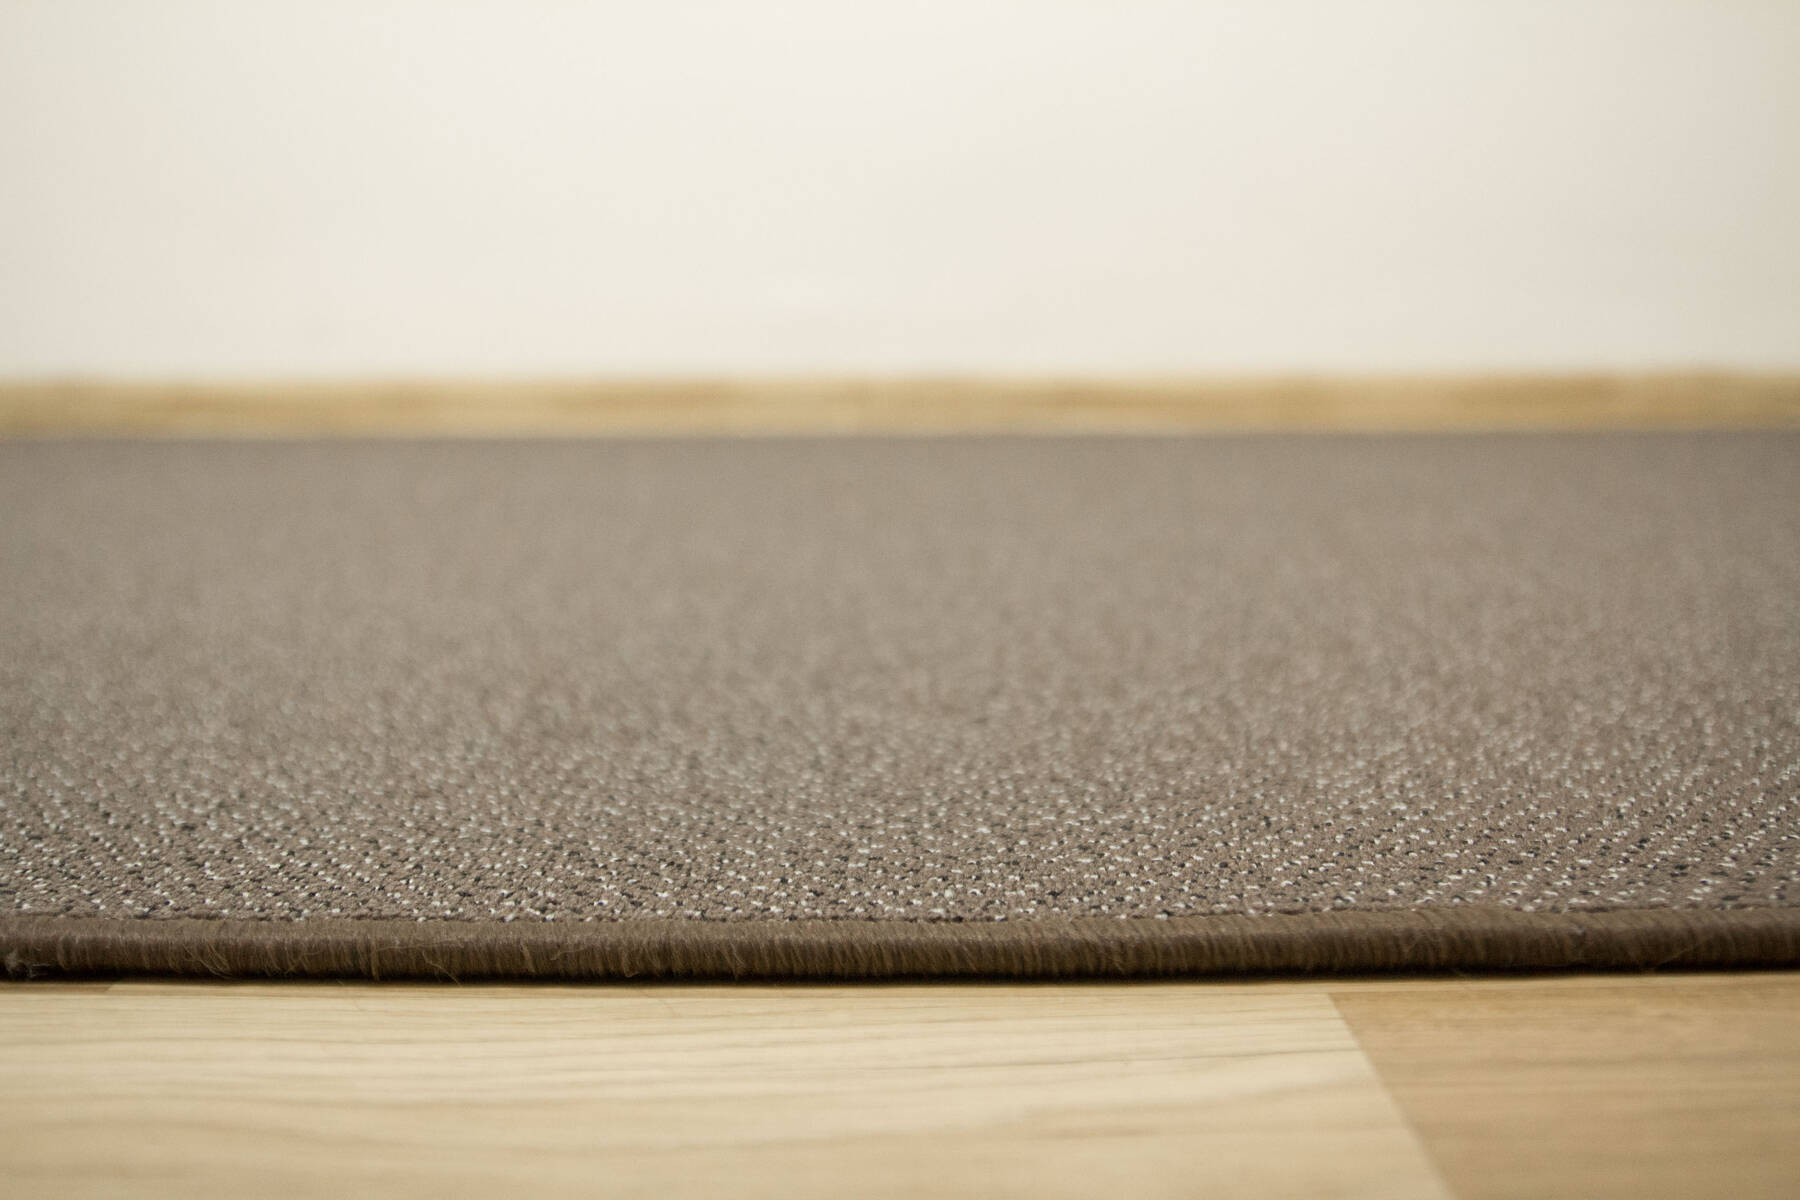 Metrážny koberec Pacific 92 hnedý / sivý